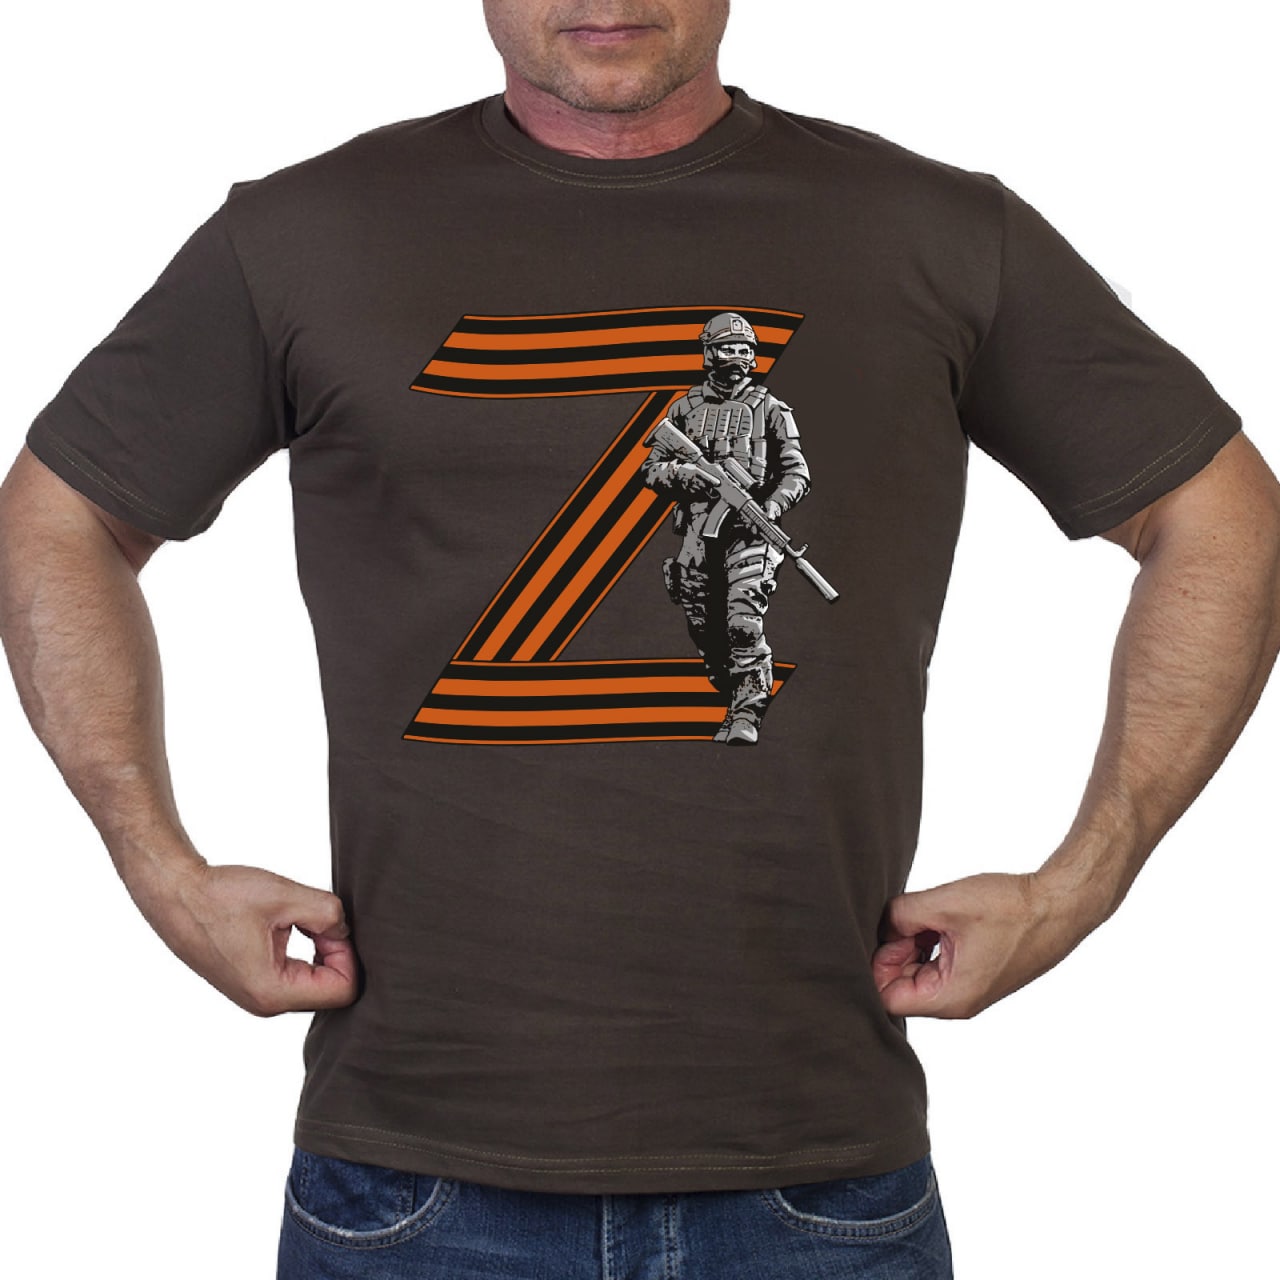 Купить футболку милитари с георгиевской буквой «Z»